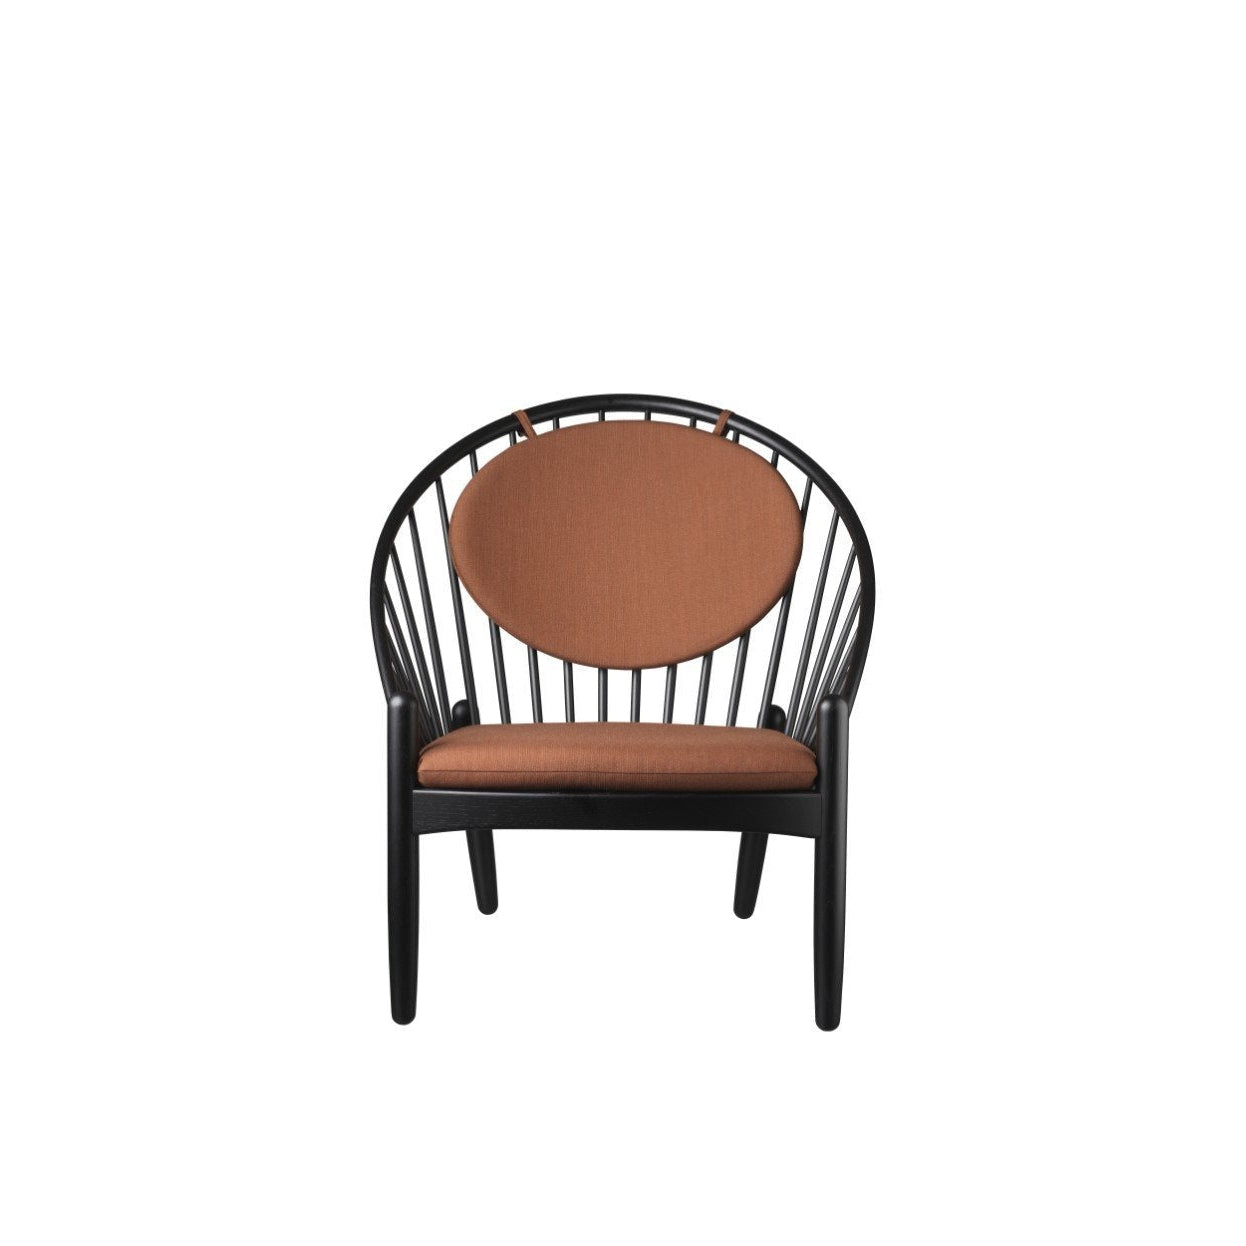 FDB Møbler Cushion pour J166 fauteuil Jørna, croustillant Brændt Orange